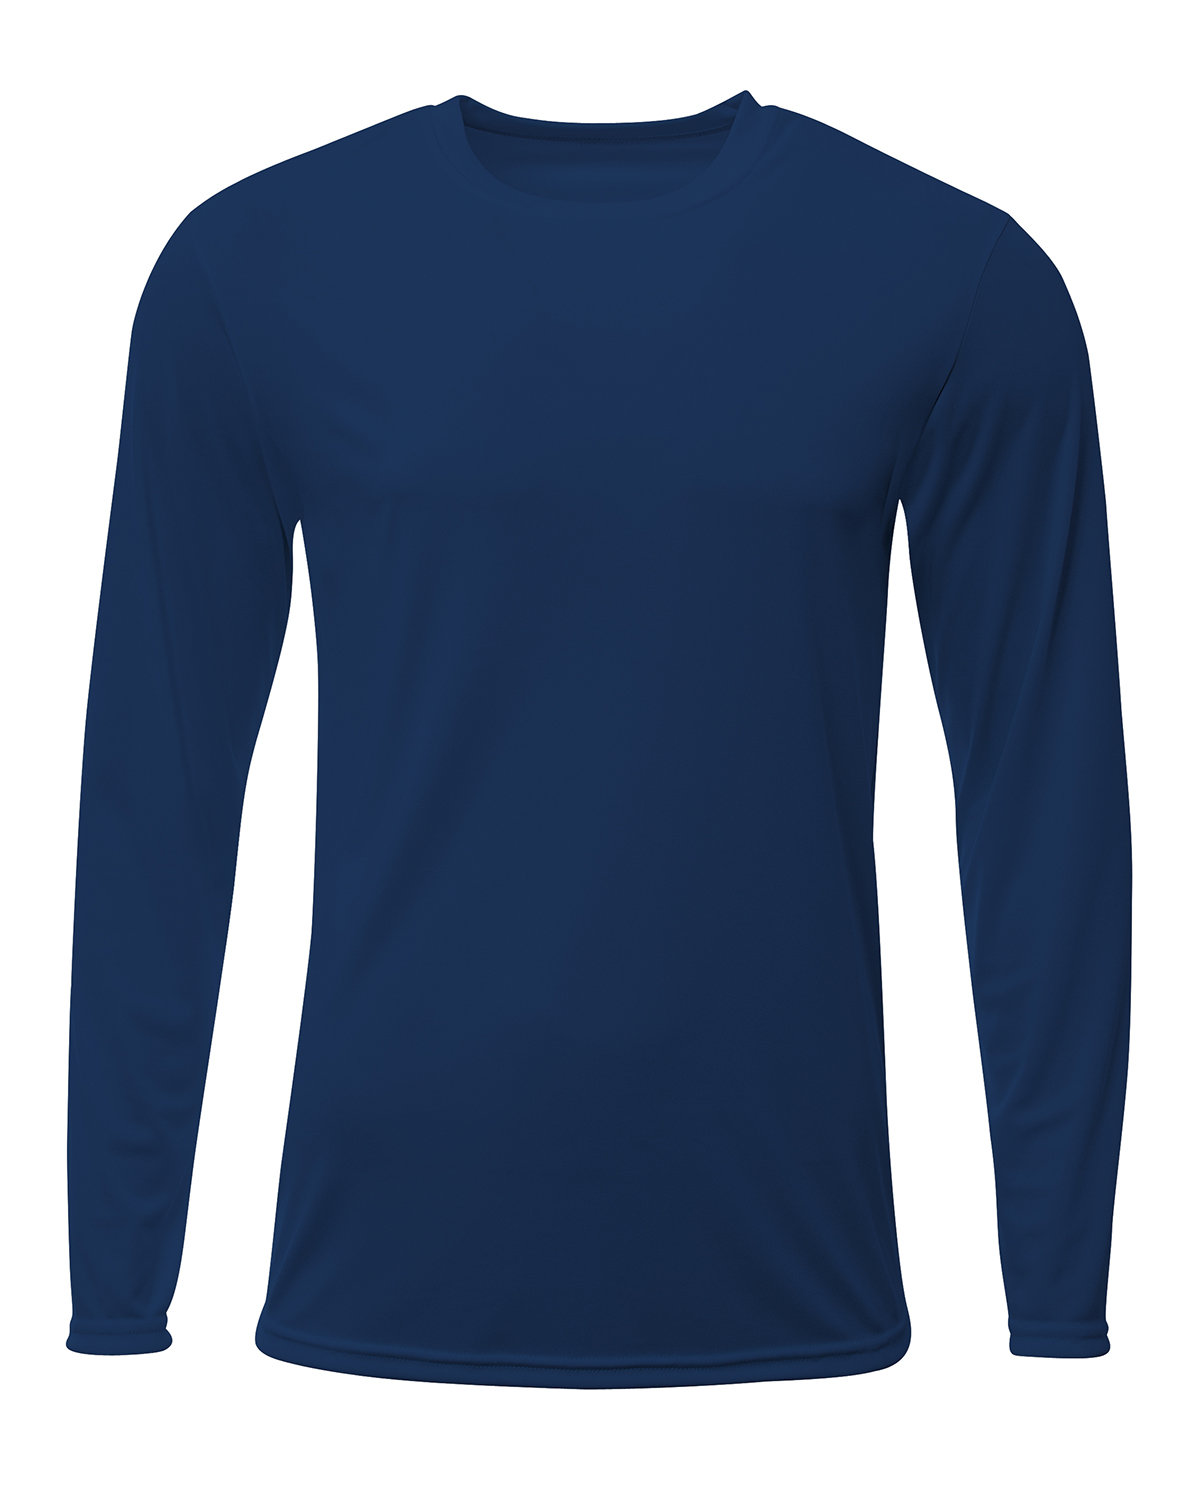 A4 Men's Sprint Long Sleeve T-Shirt NAVY 